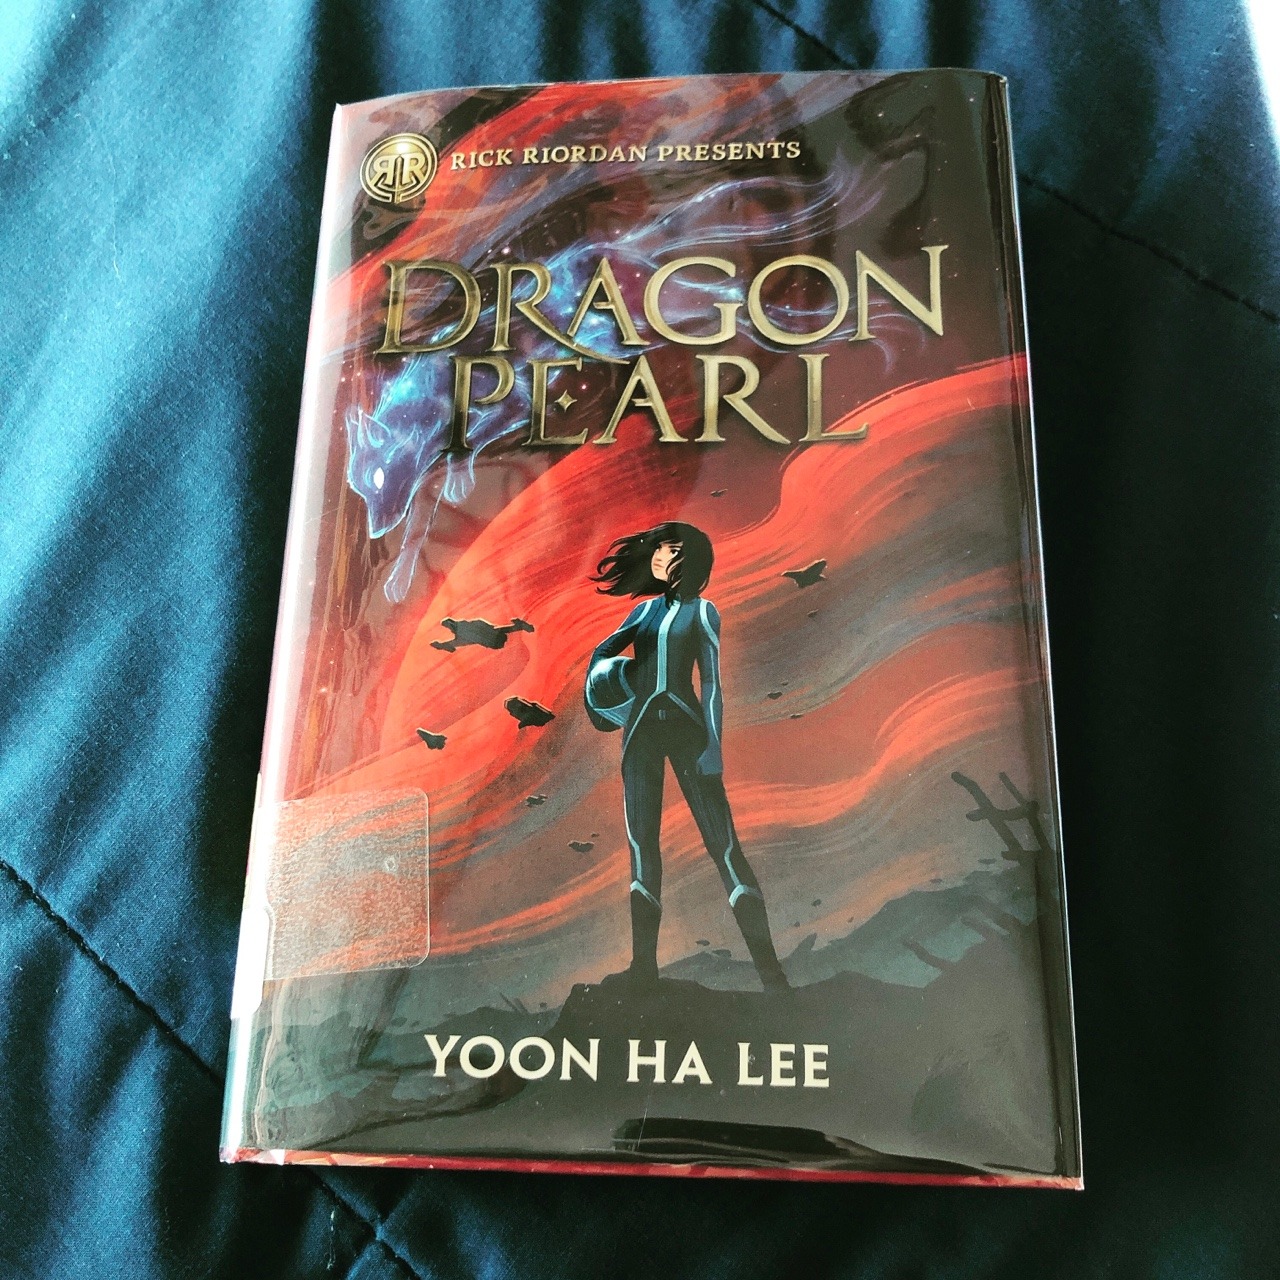 dragon pearl yoon ha lee